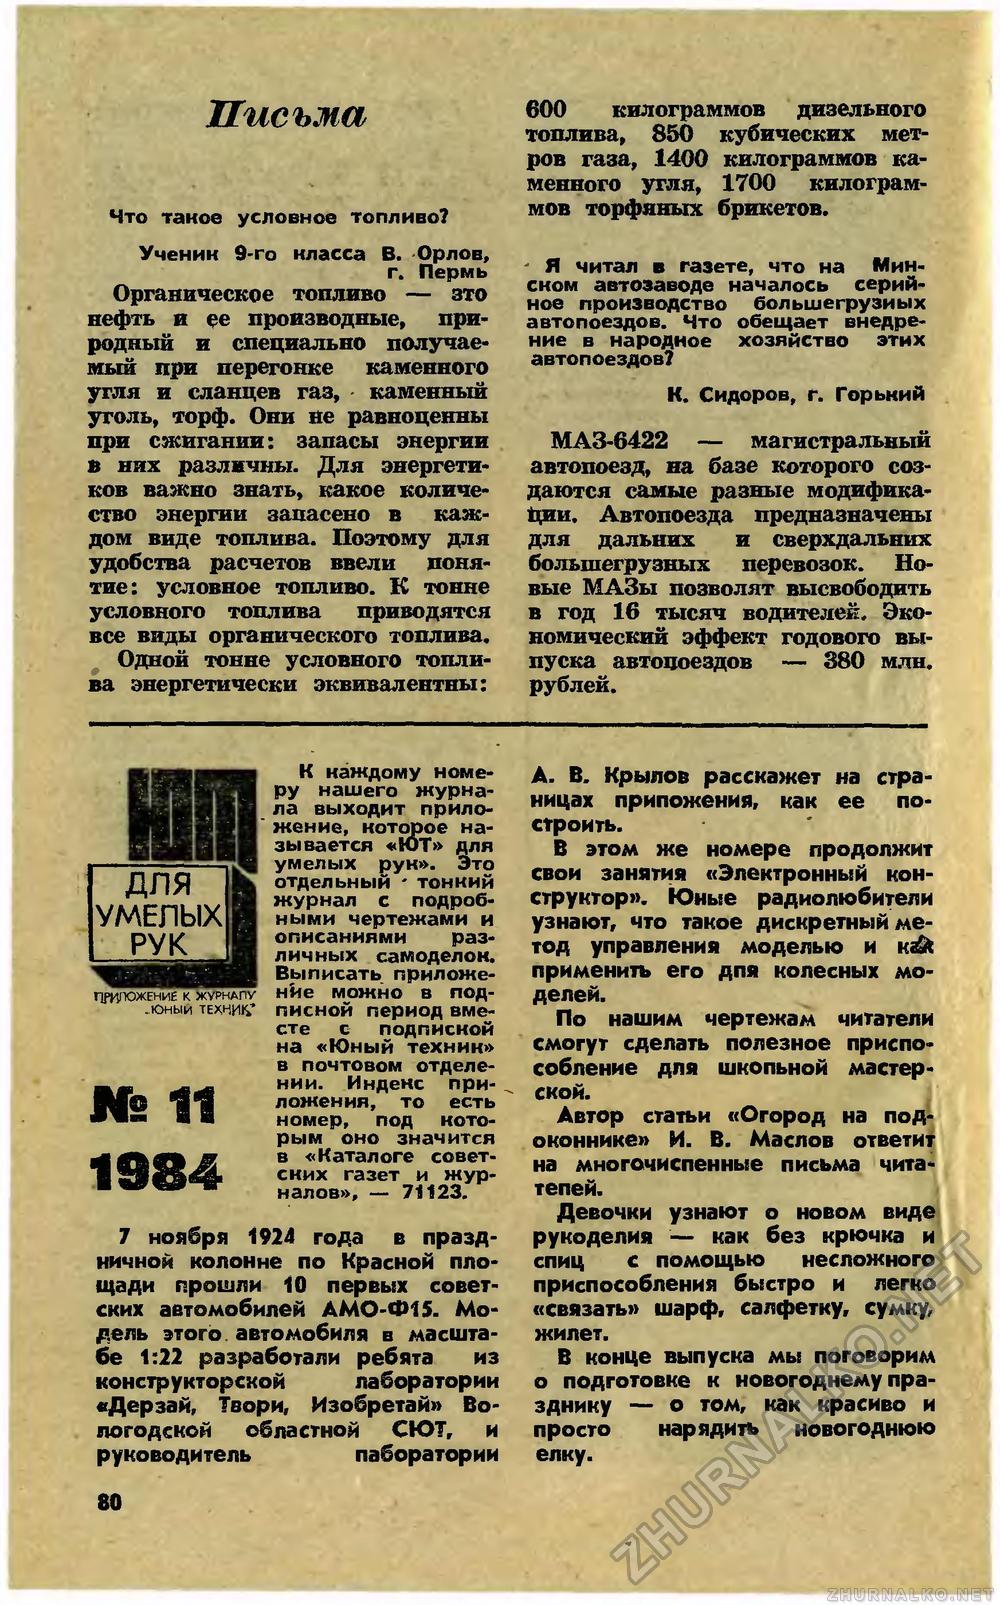   1984-11,  84